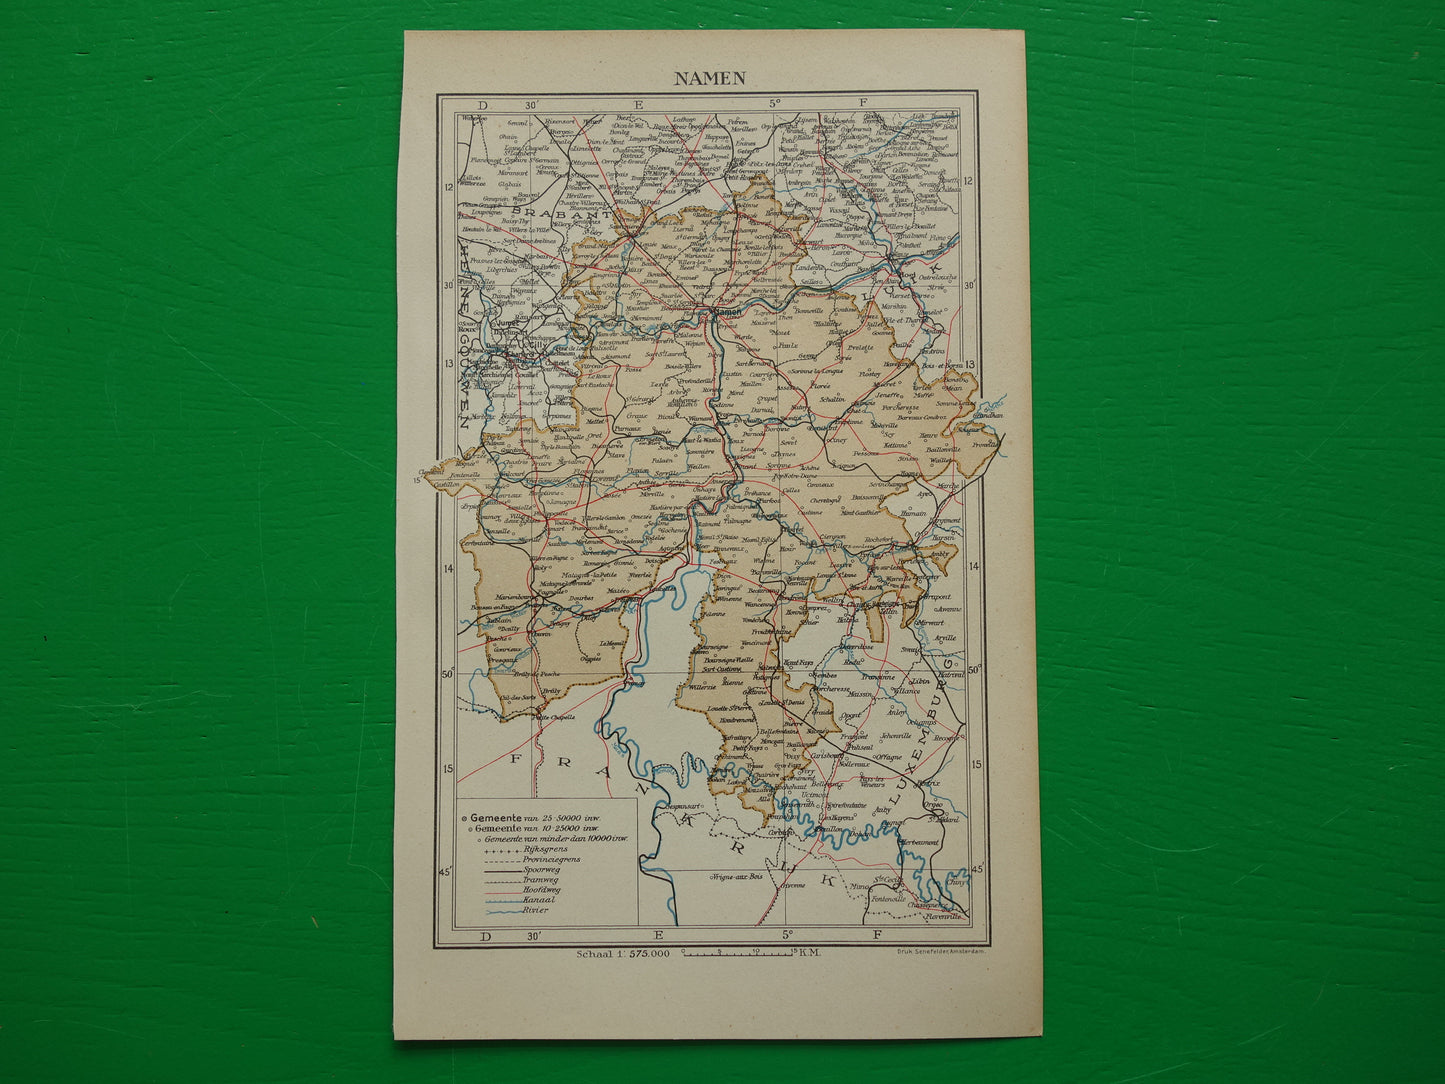 NAMEN oude kaart van provincie Namen België uit 1937 kleine originele vintage landkaart Namur Nameur